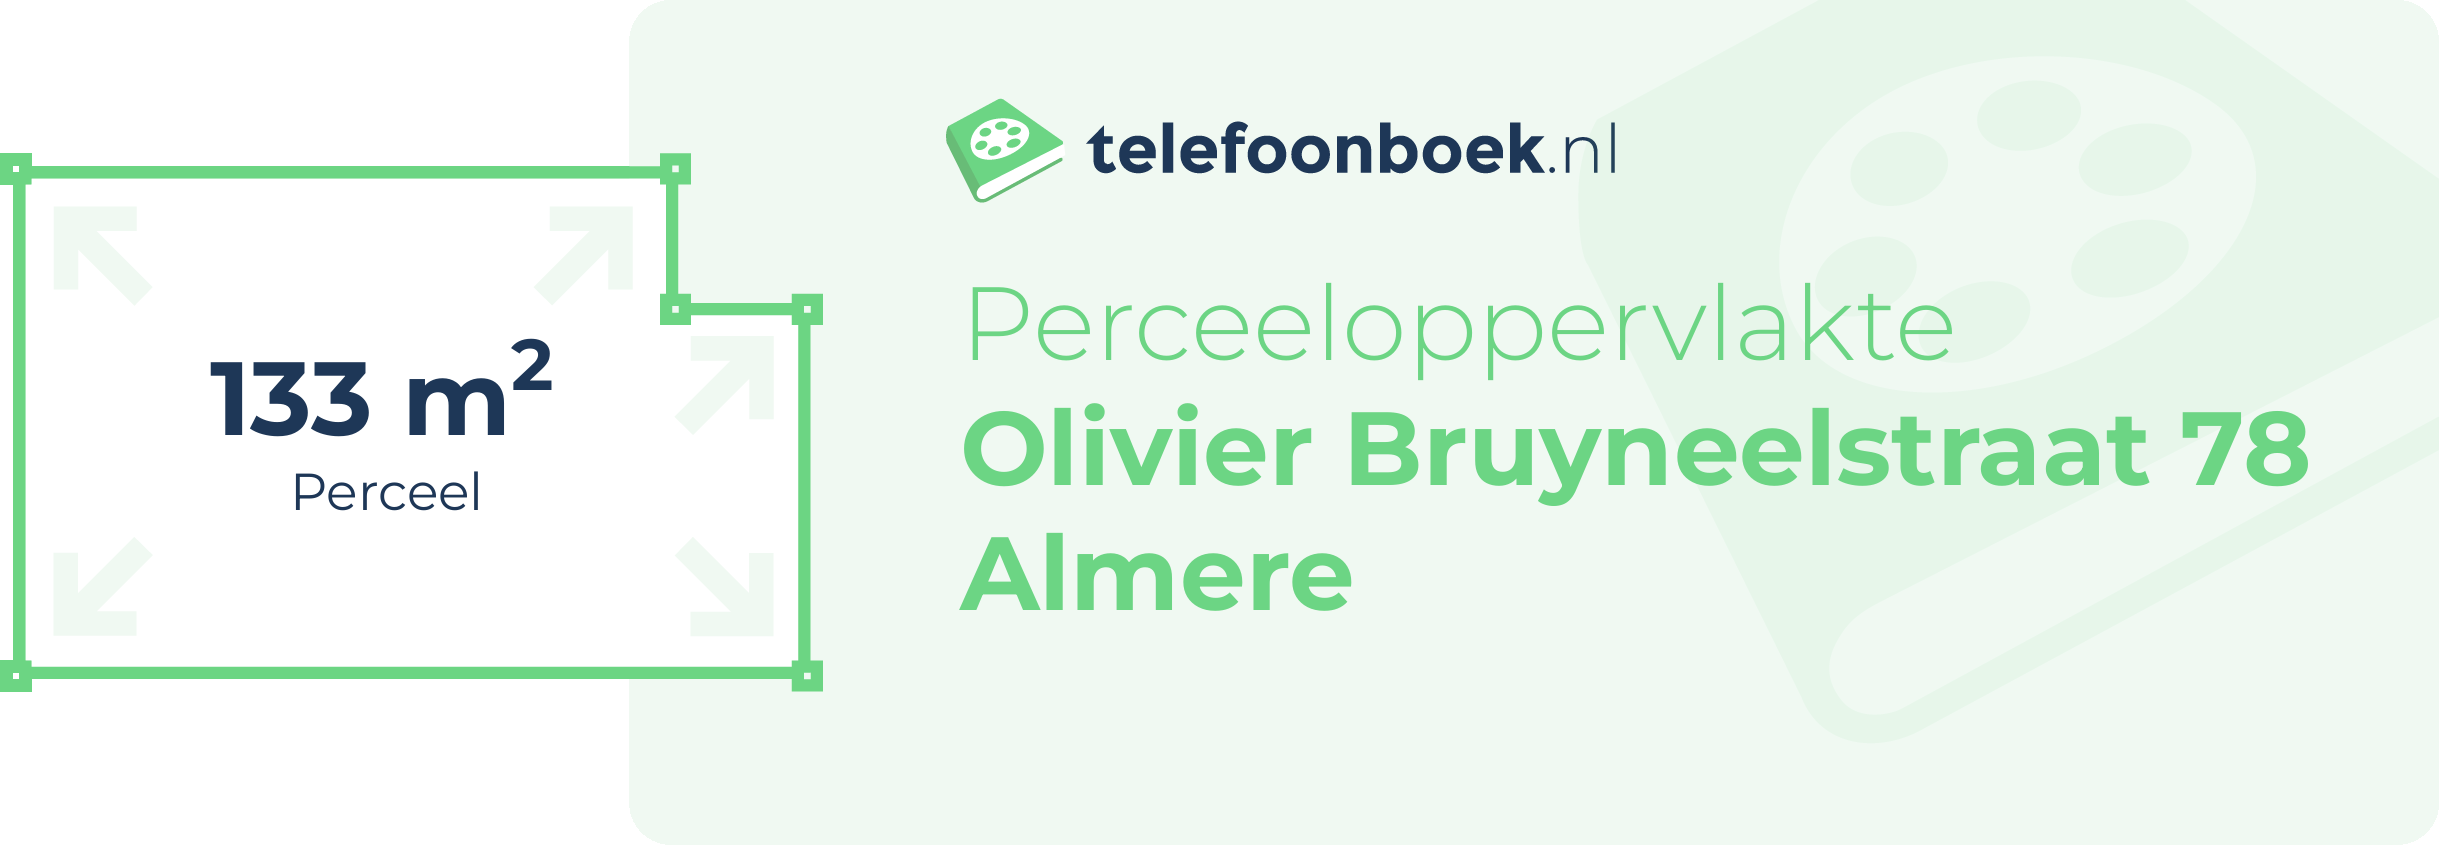 Perceeloppervlakte Olivier Bruyneelstraat 78 Almere